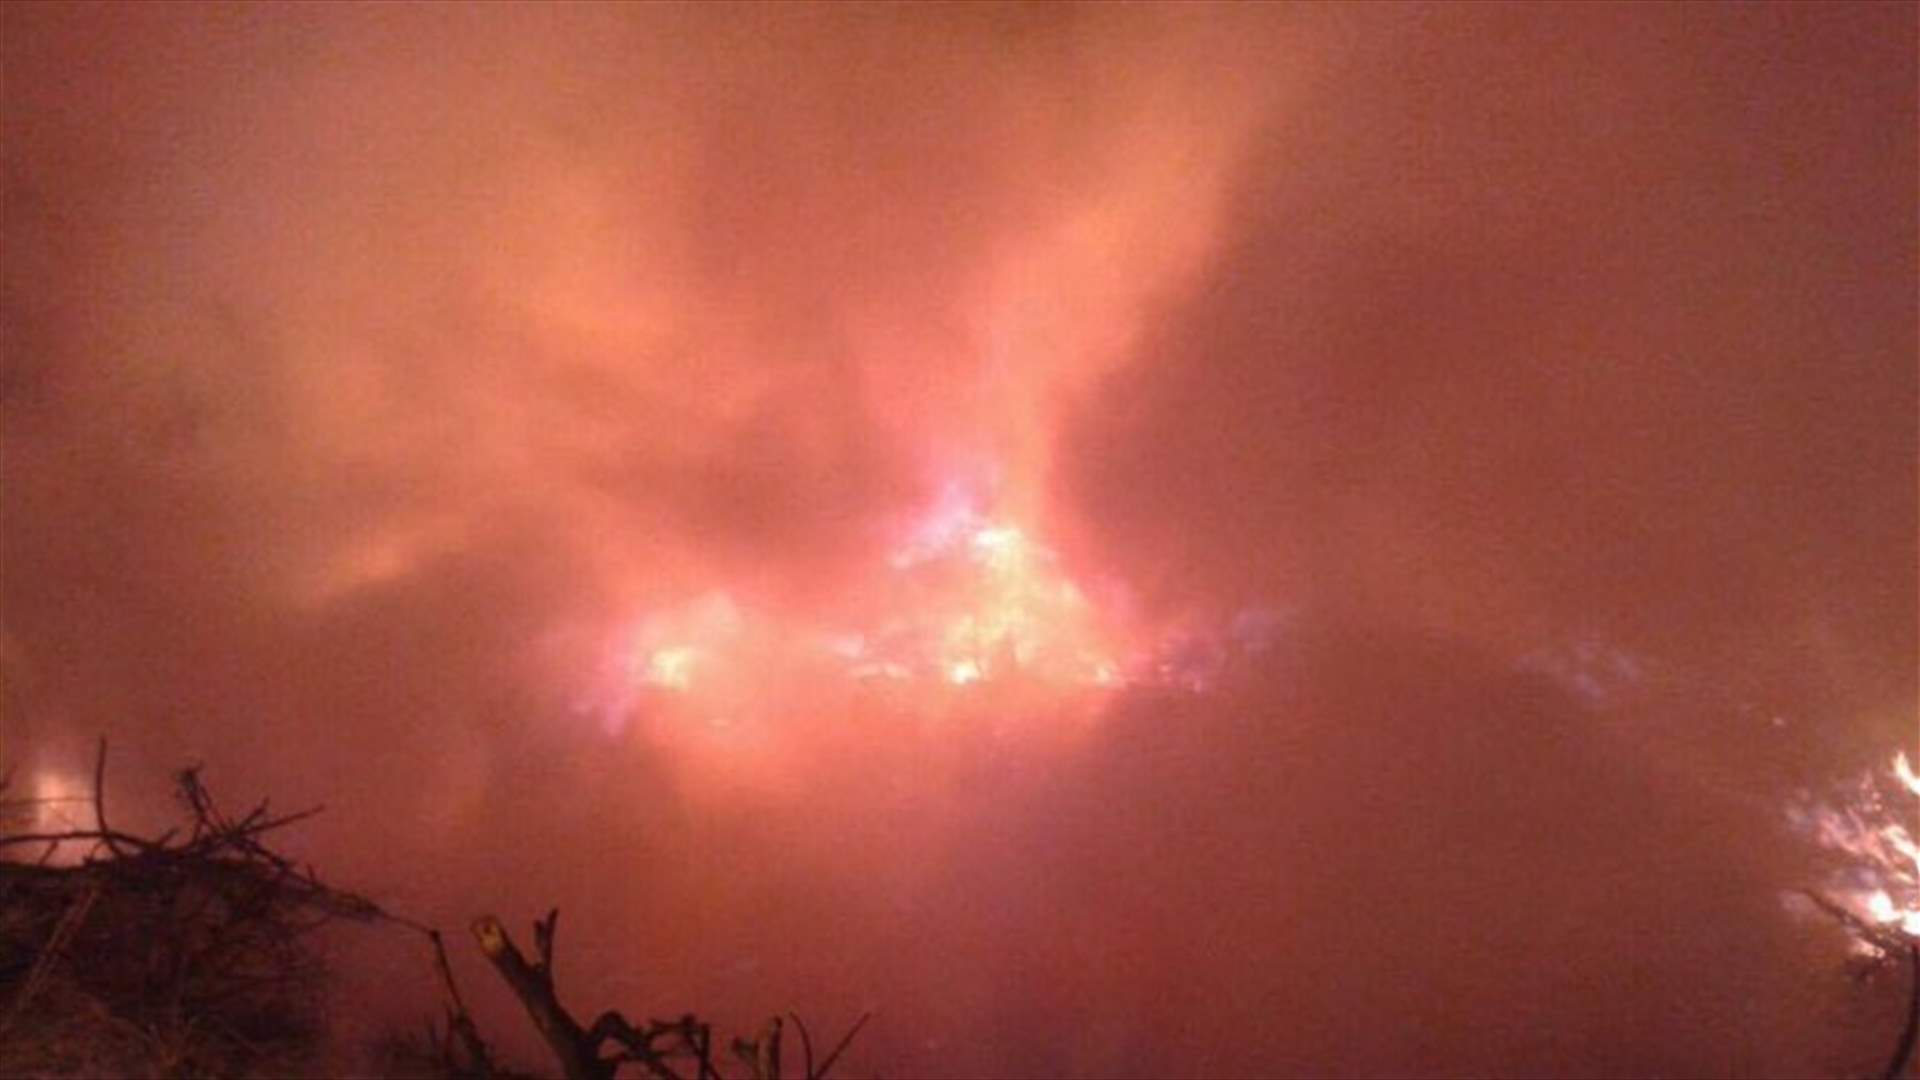 بالصور- حريق كبير في كرم الزيتون بالاشرفية